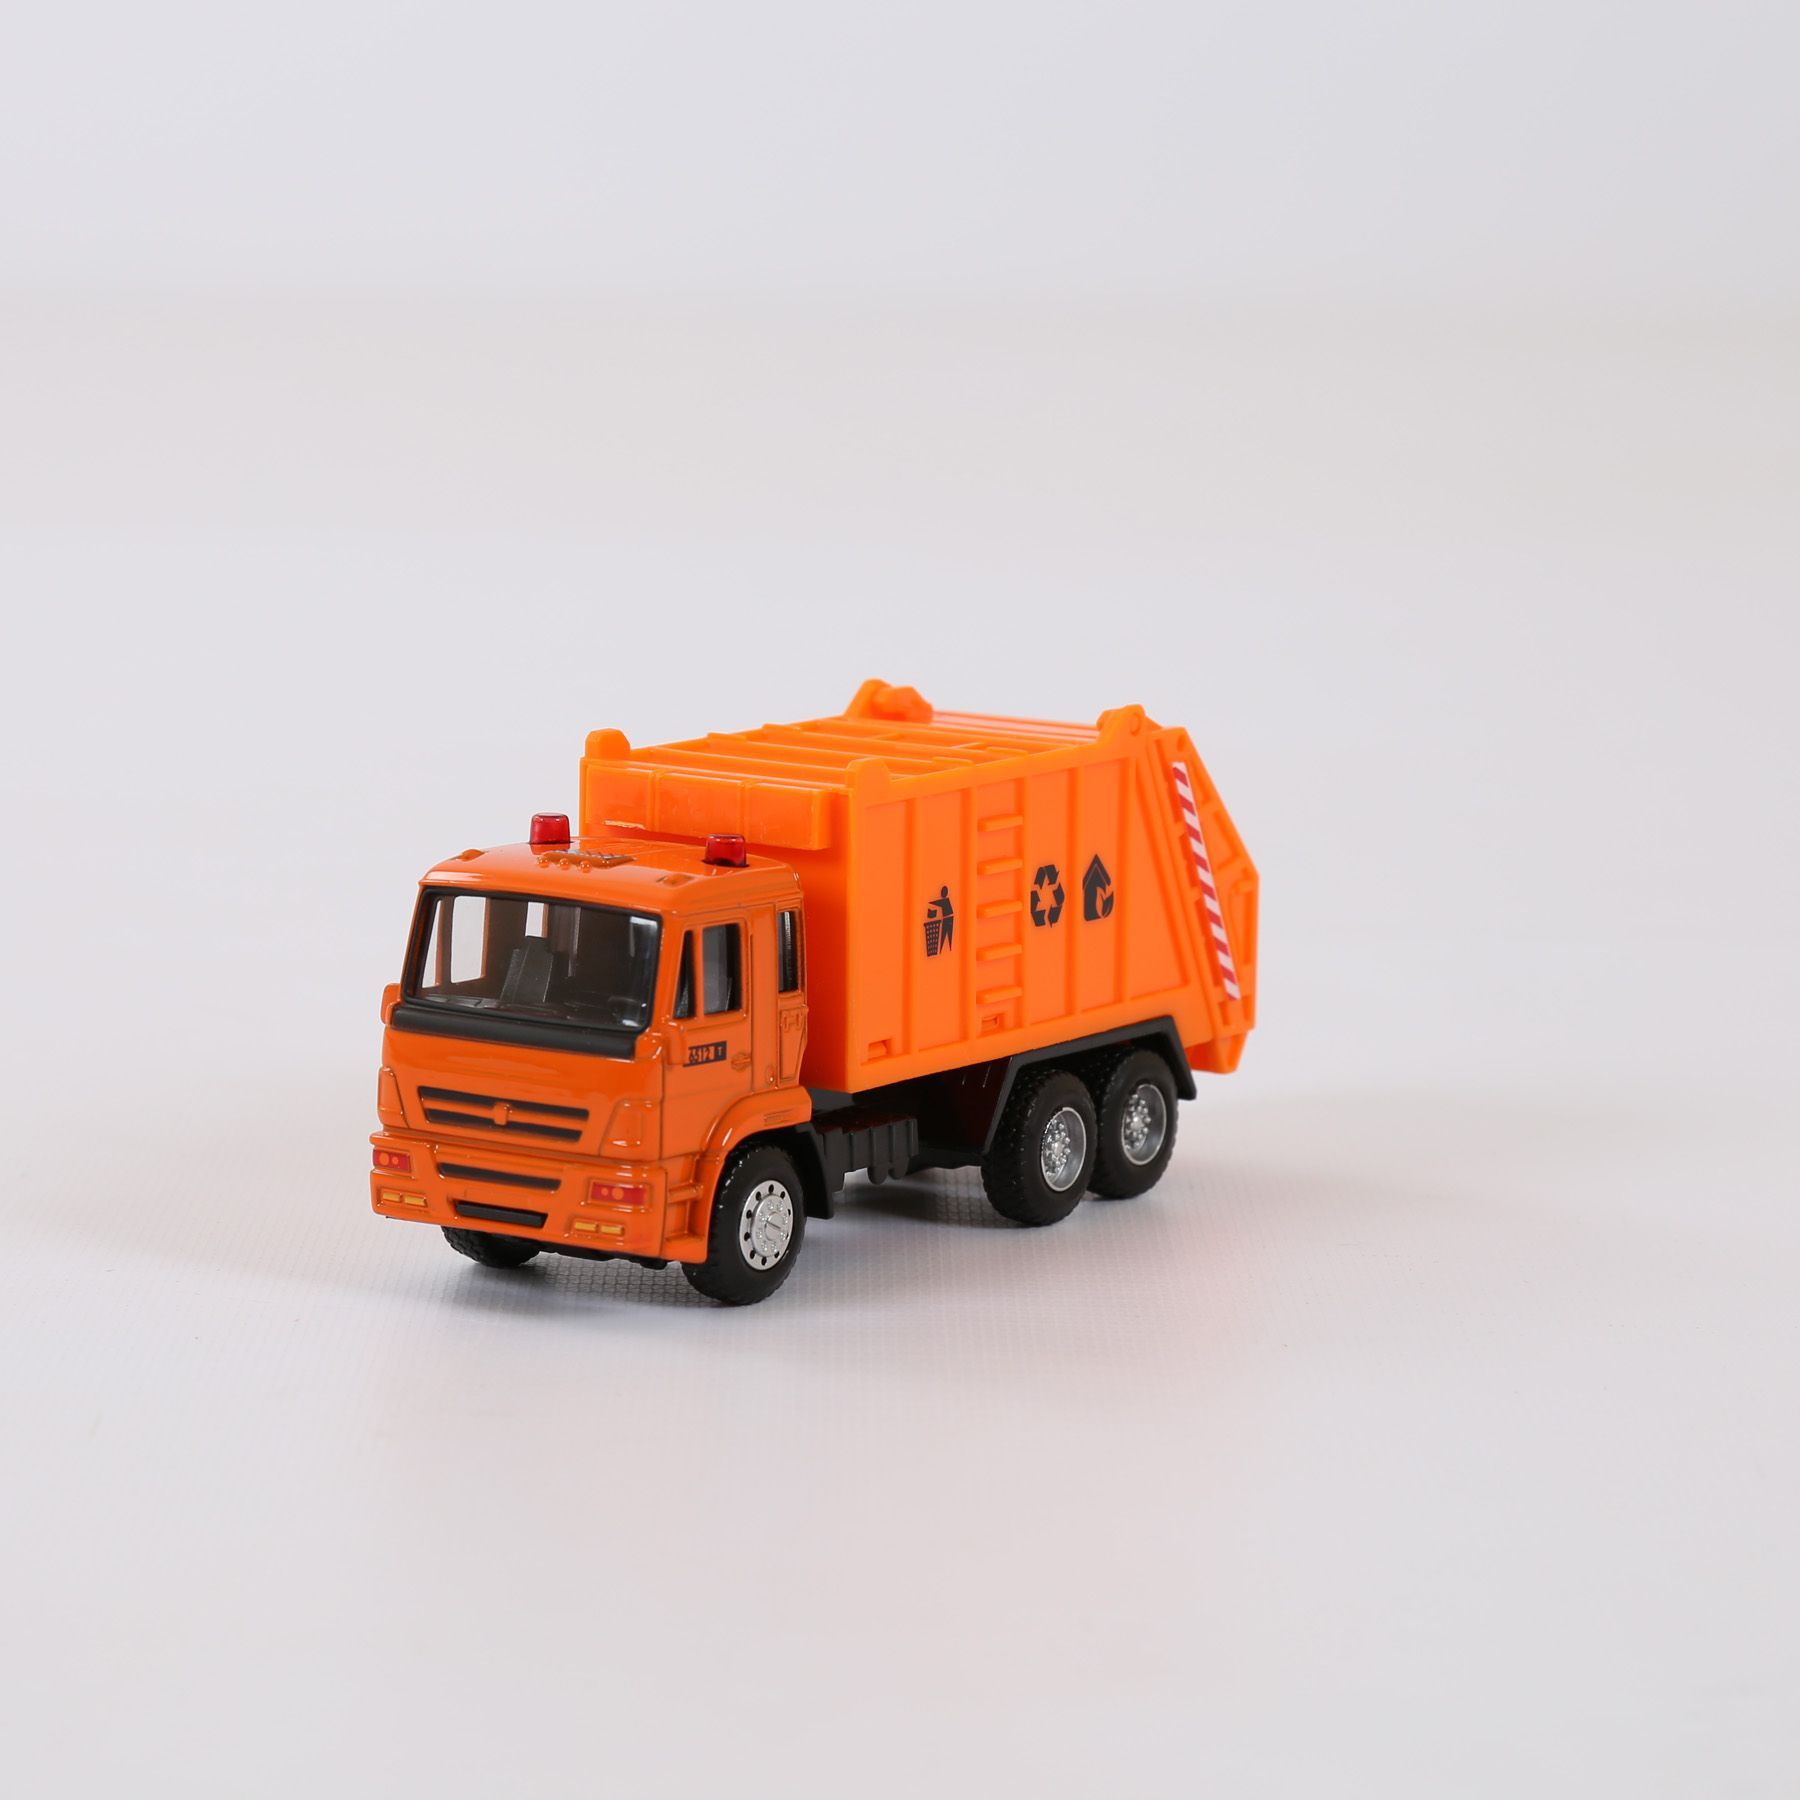 Мусоровоз Play Smart 6512d. КАМАЗ трёхколёсная коллекционная мусоровозка оранжевая. КАМАЗ 5360. Эвакуатор Play Smart. Оранжевый мусоровоз